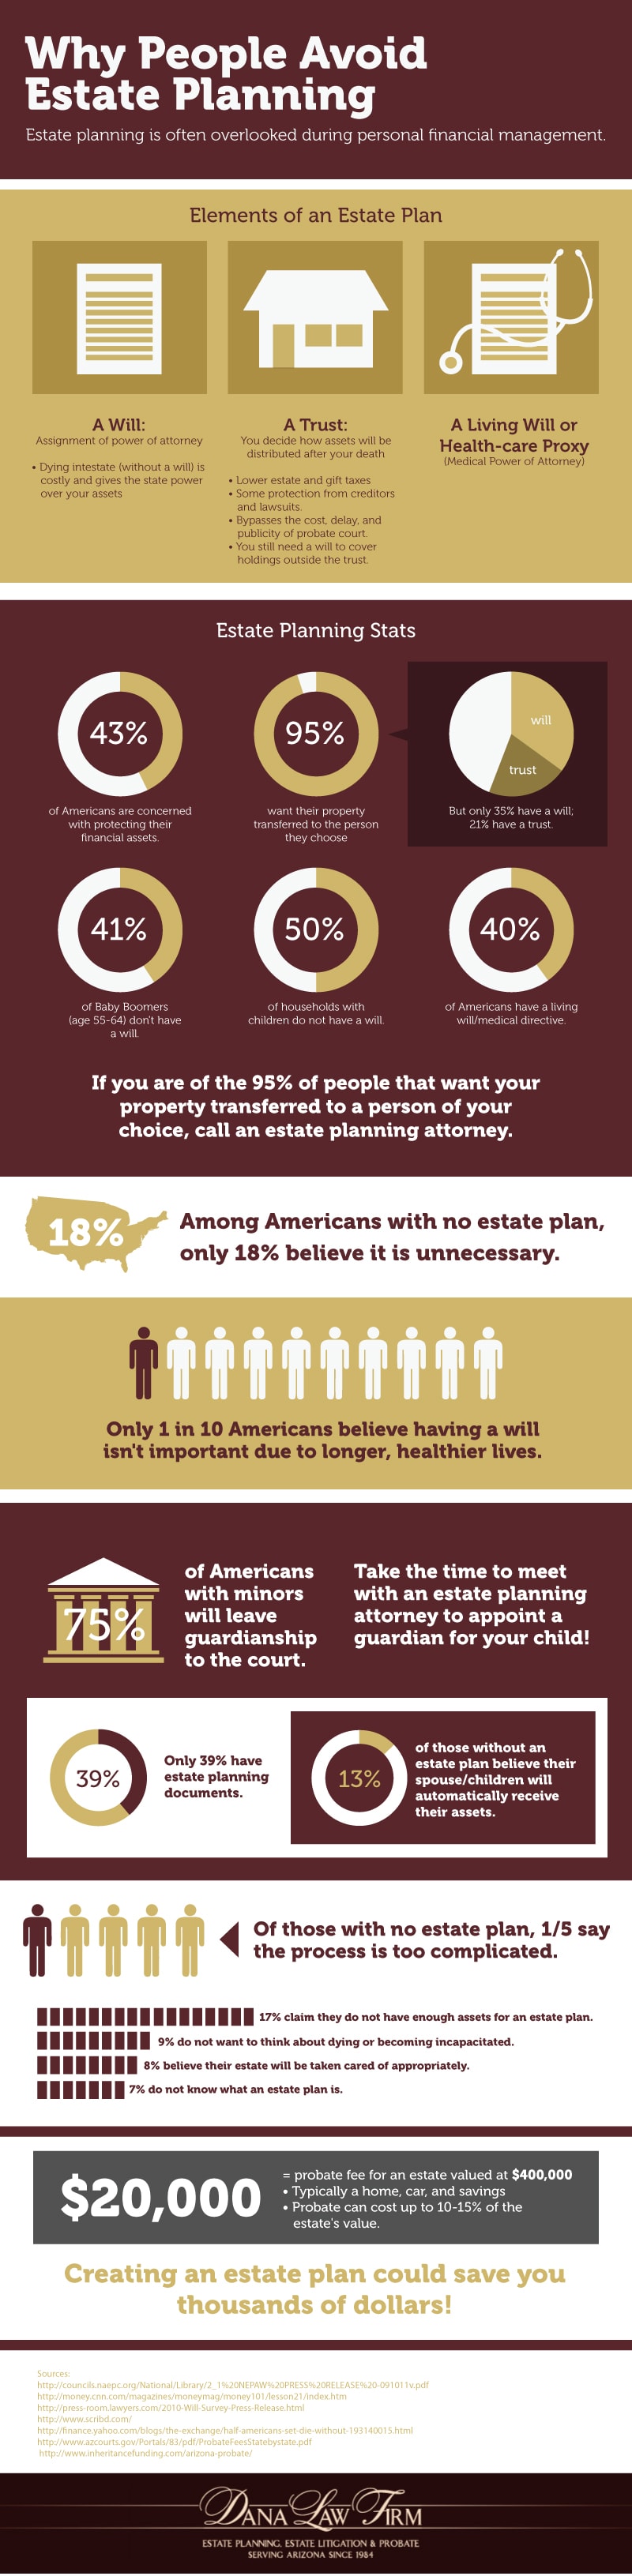 Avoiding Estate Planning Infographic